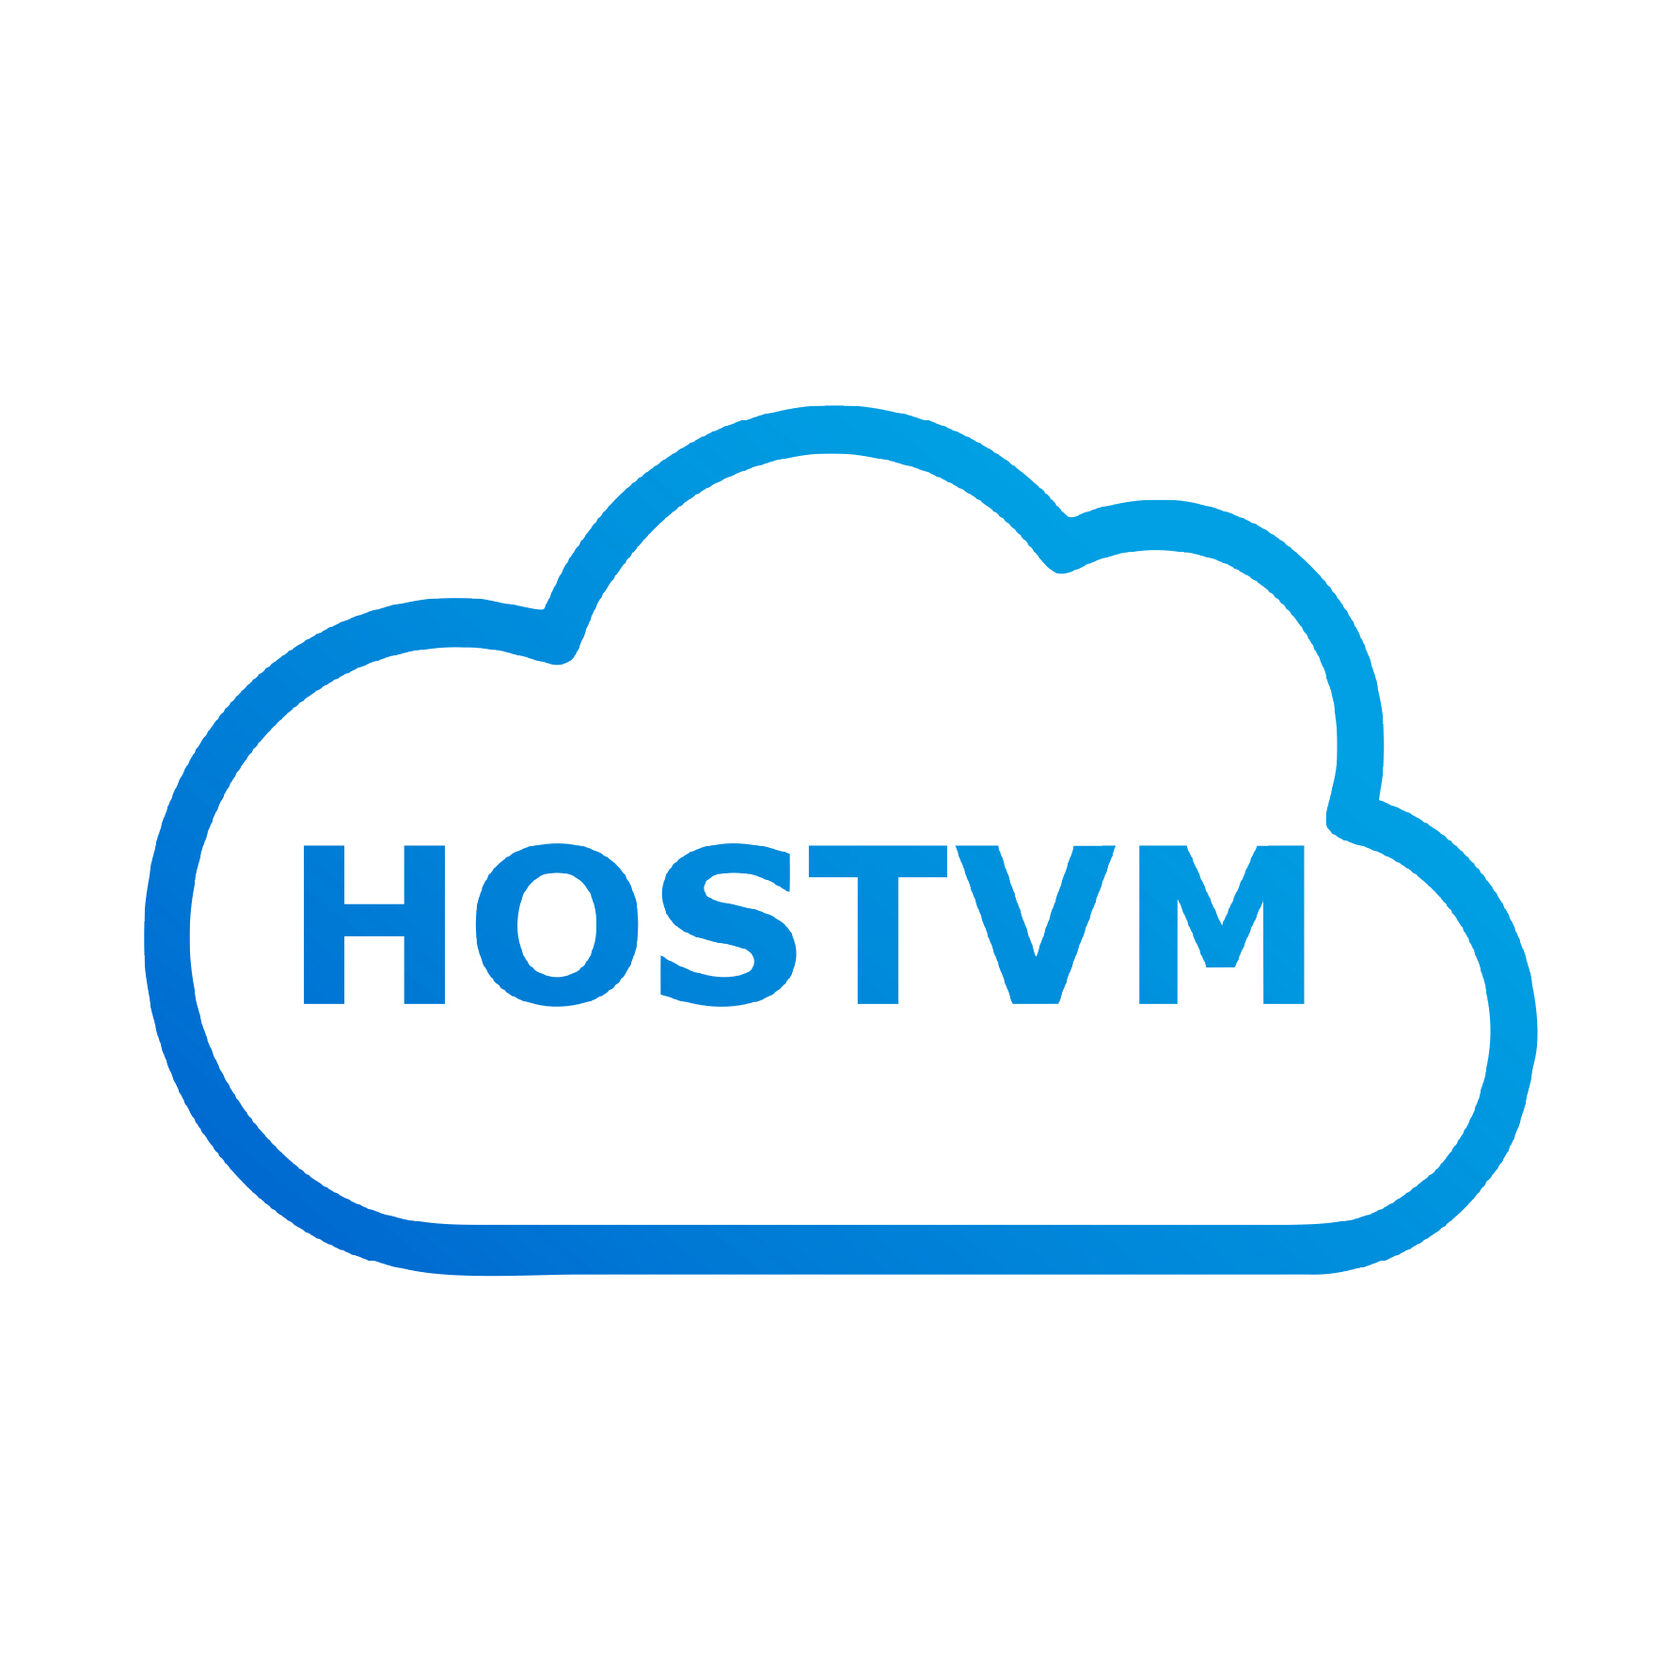 Vm host. VM эмблема. Hostvm компания. VM logo.